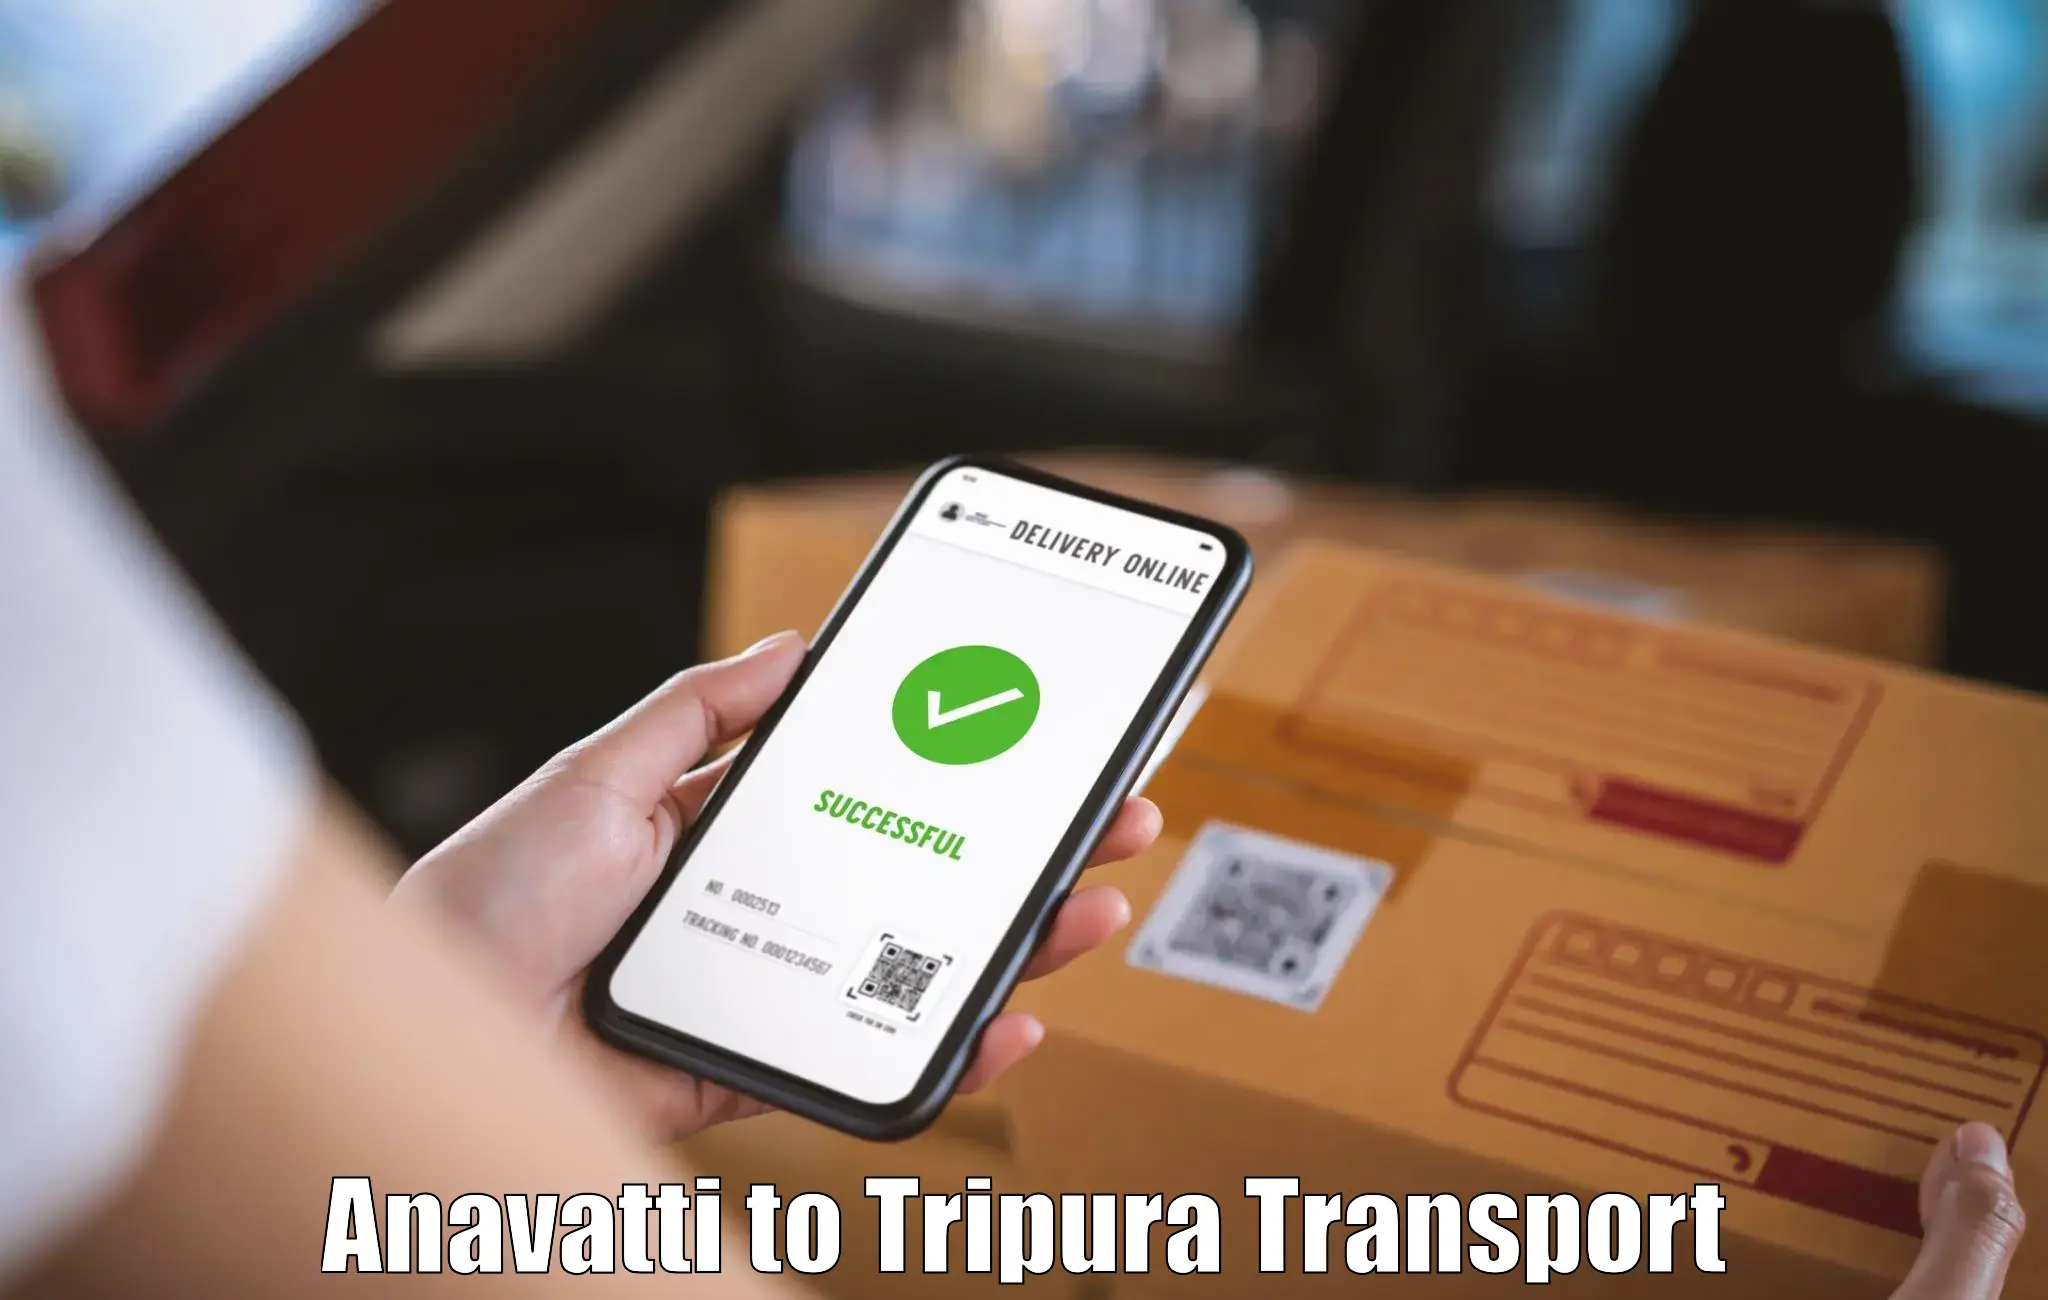 Furniture transport service in Anavatti to Tripura